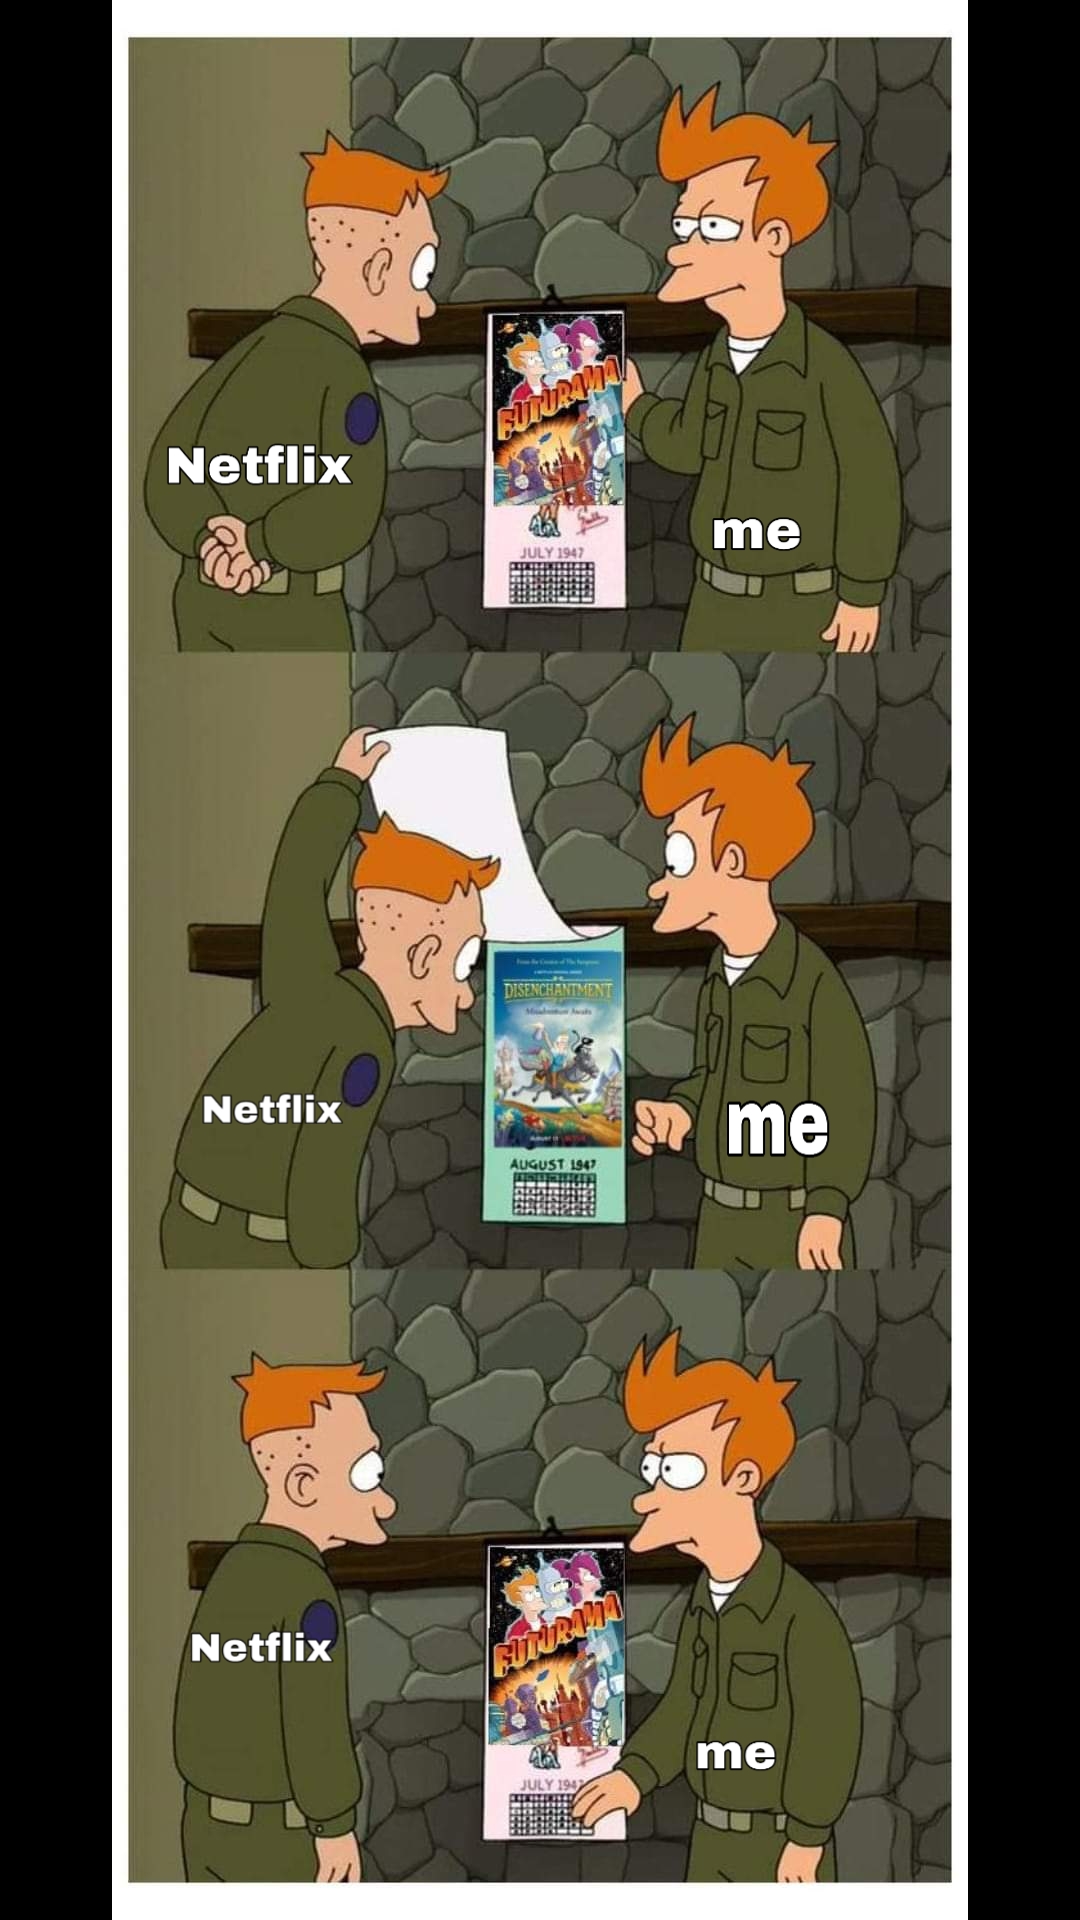 futurama - Netflix me Netflix me Netflix me